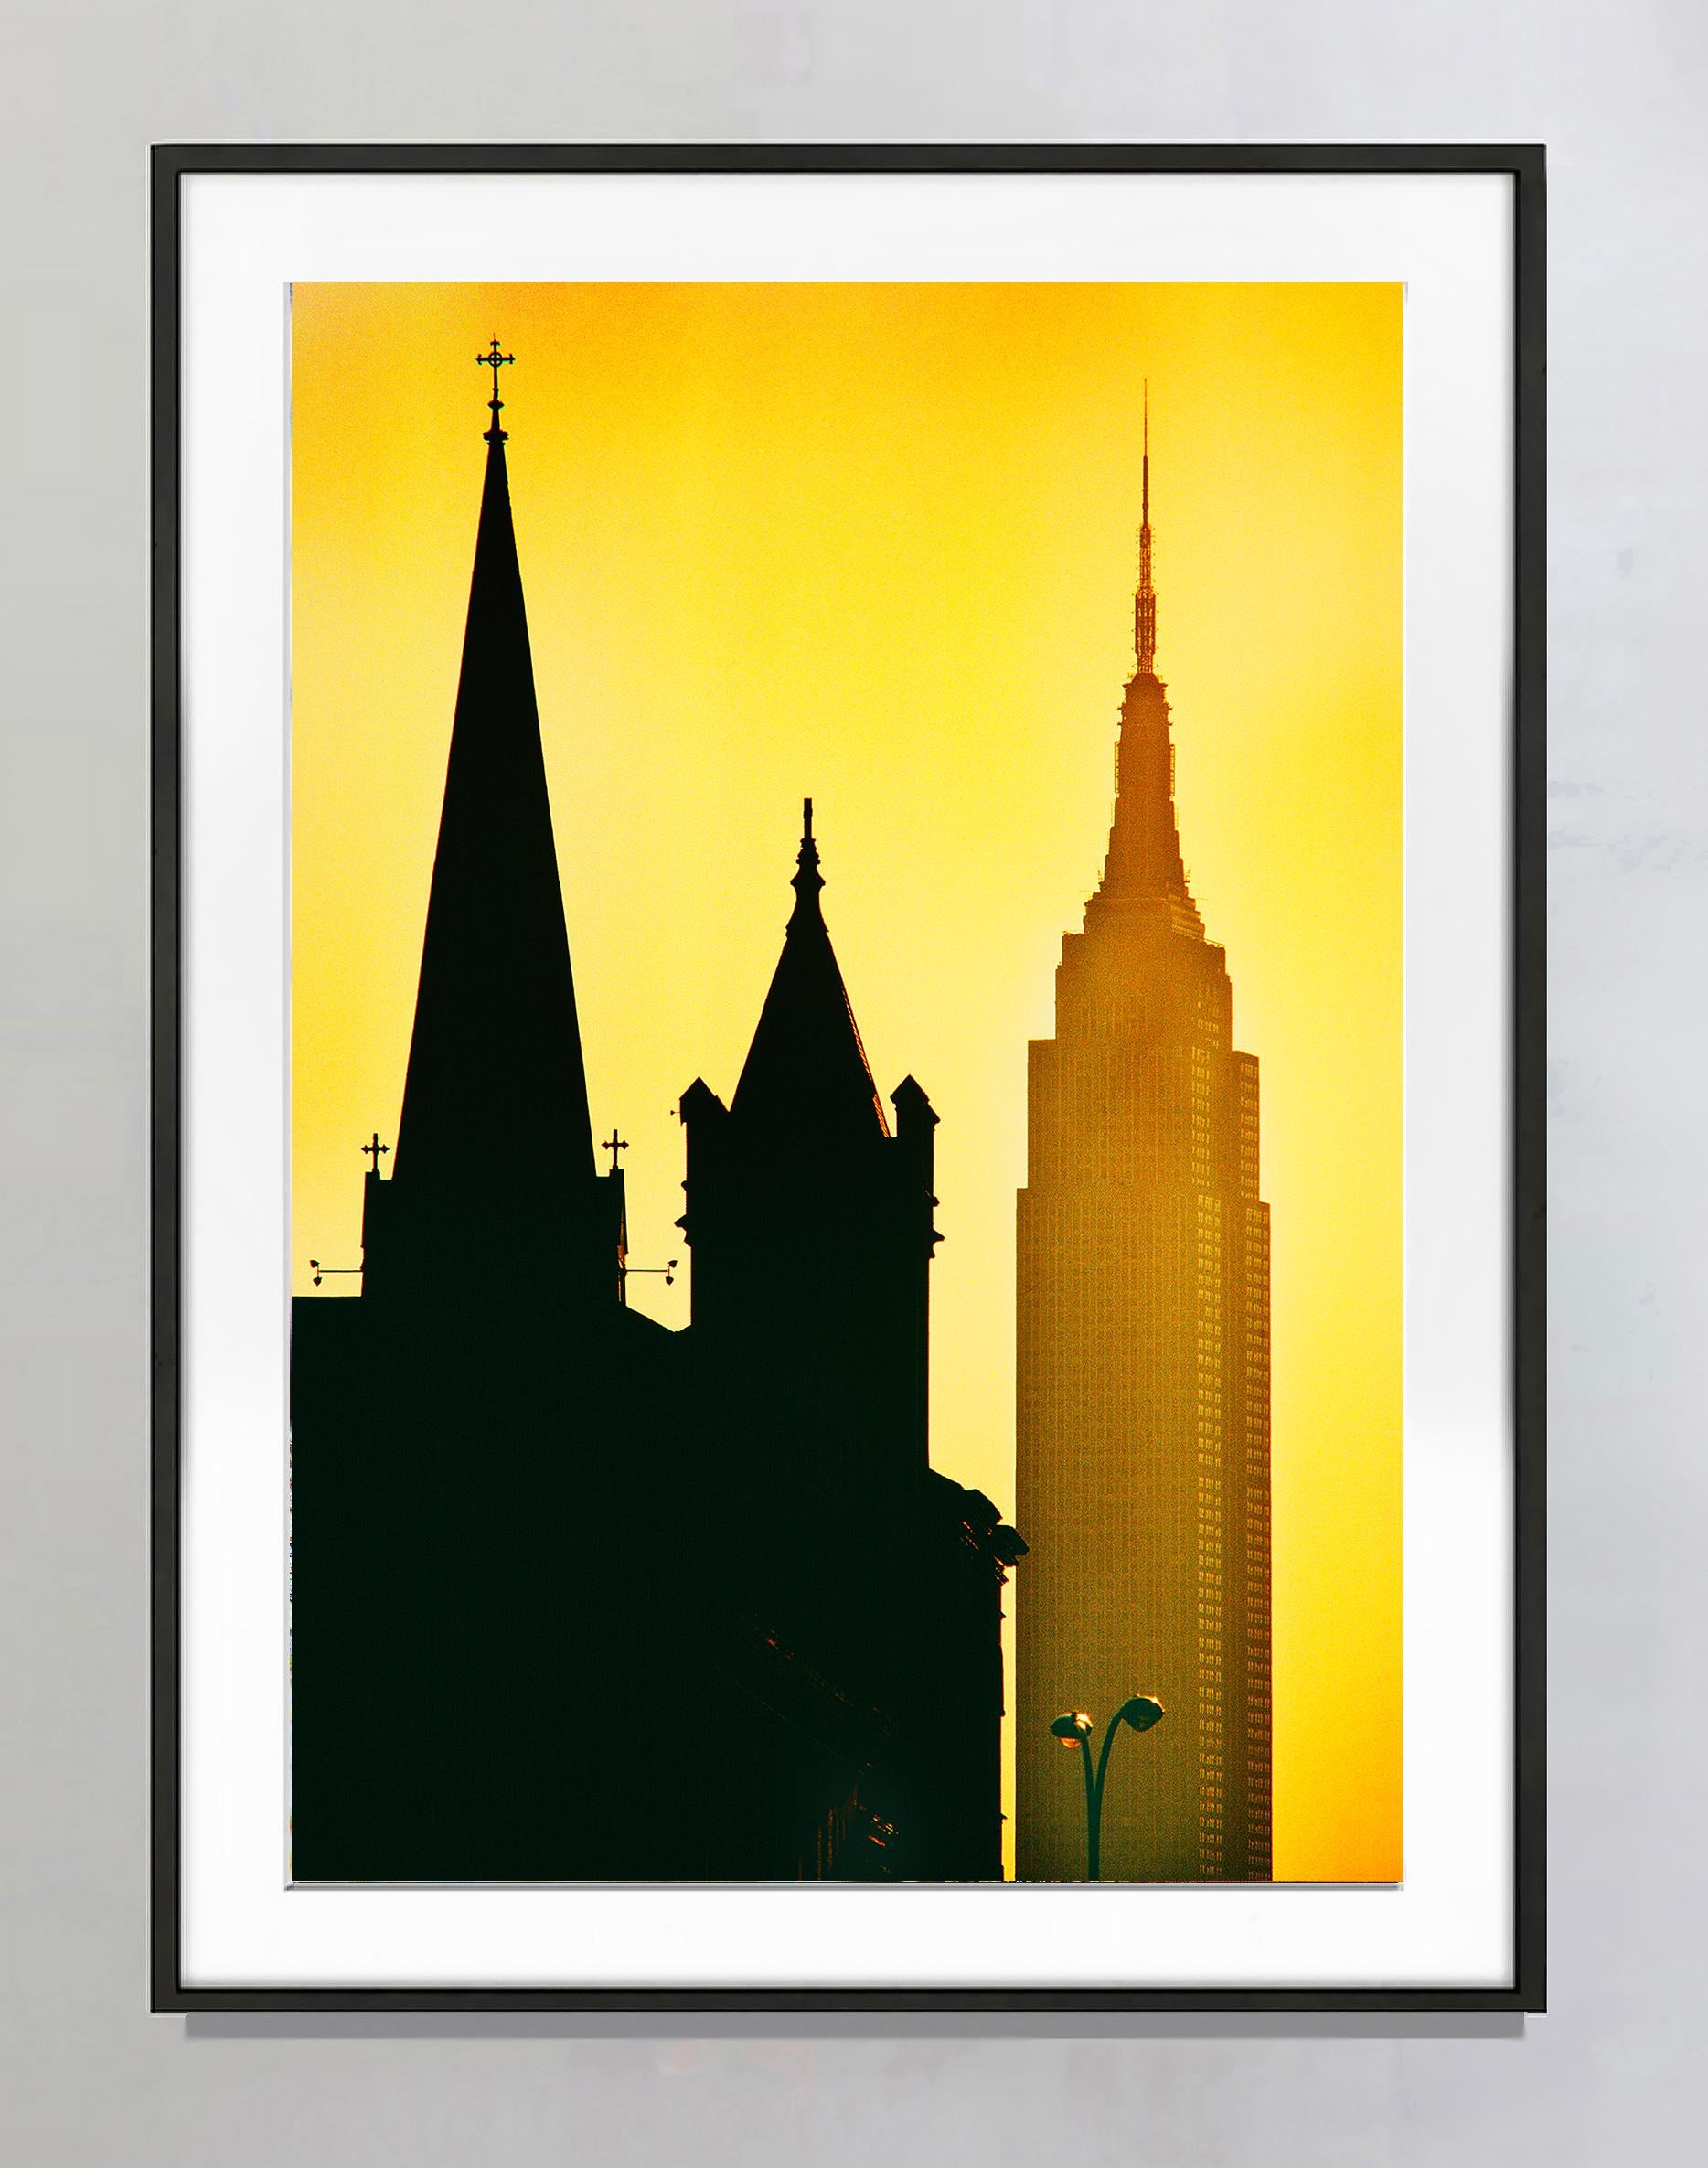 Inspirierende Spiren: Empire State Building in New York City bei Gold-Sonnenuntergang – Photograph von Mitchell Funk